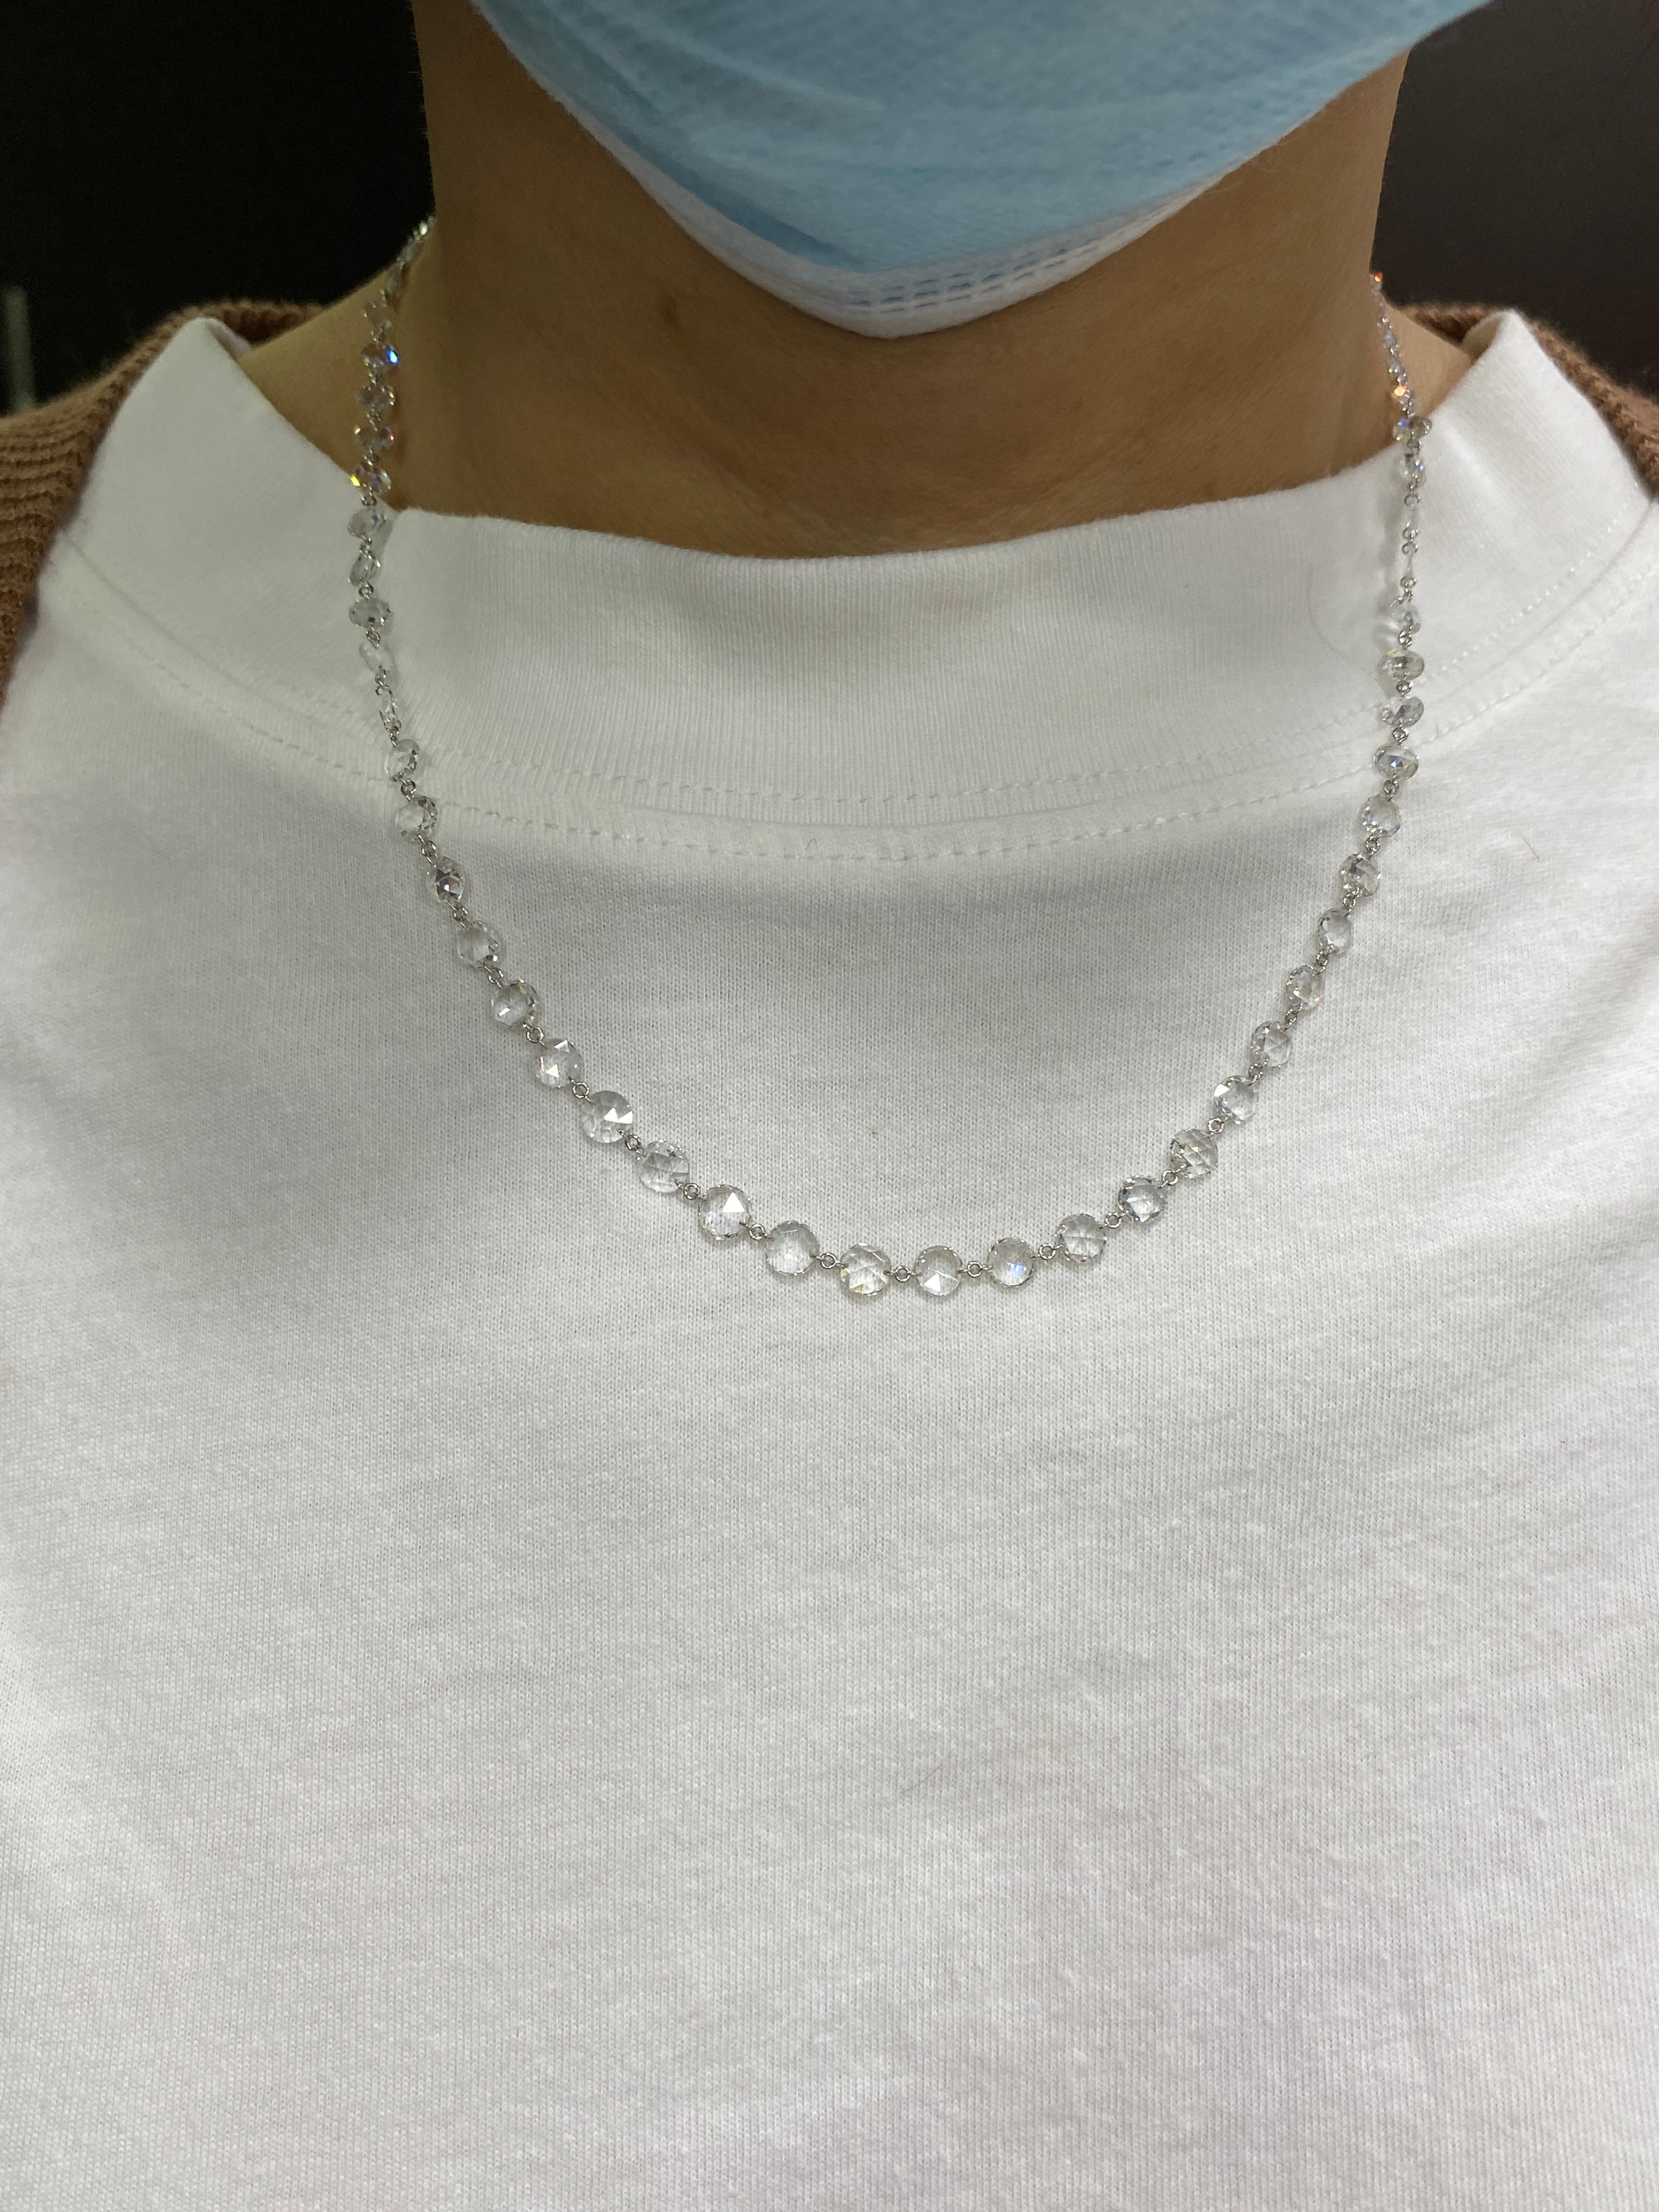 JR 12,08 Karat Weißer Diamant im Rosenschliff Halskette 

Diese Halskette sorgt für einen kompletten Look in sich. Die Schließe ist speziell mit Pave-Diamanten besetzt. Sie kann auch als Lagenkette getragen werden.

Länge der Halskette : 18